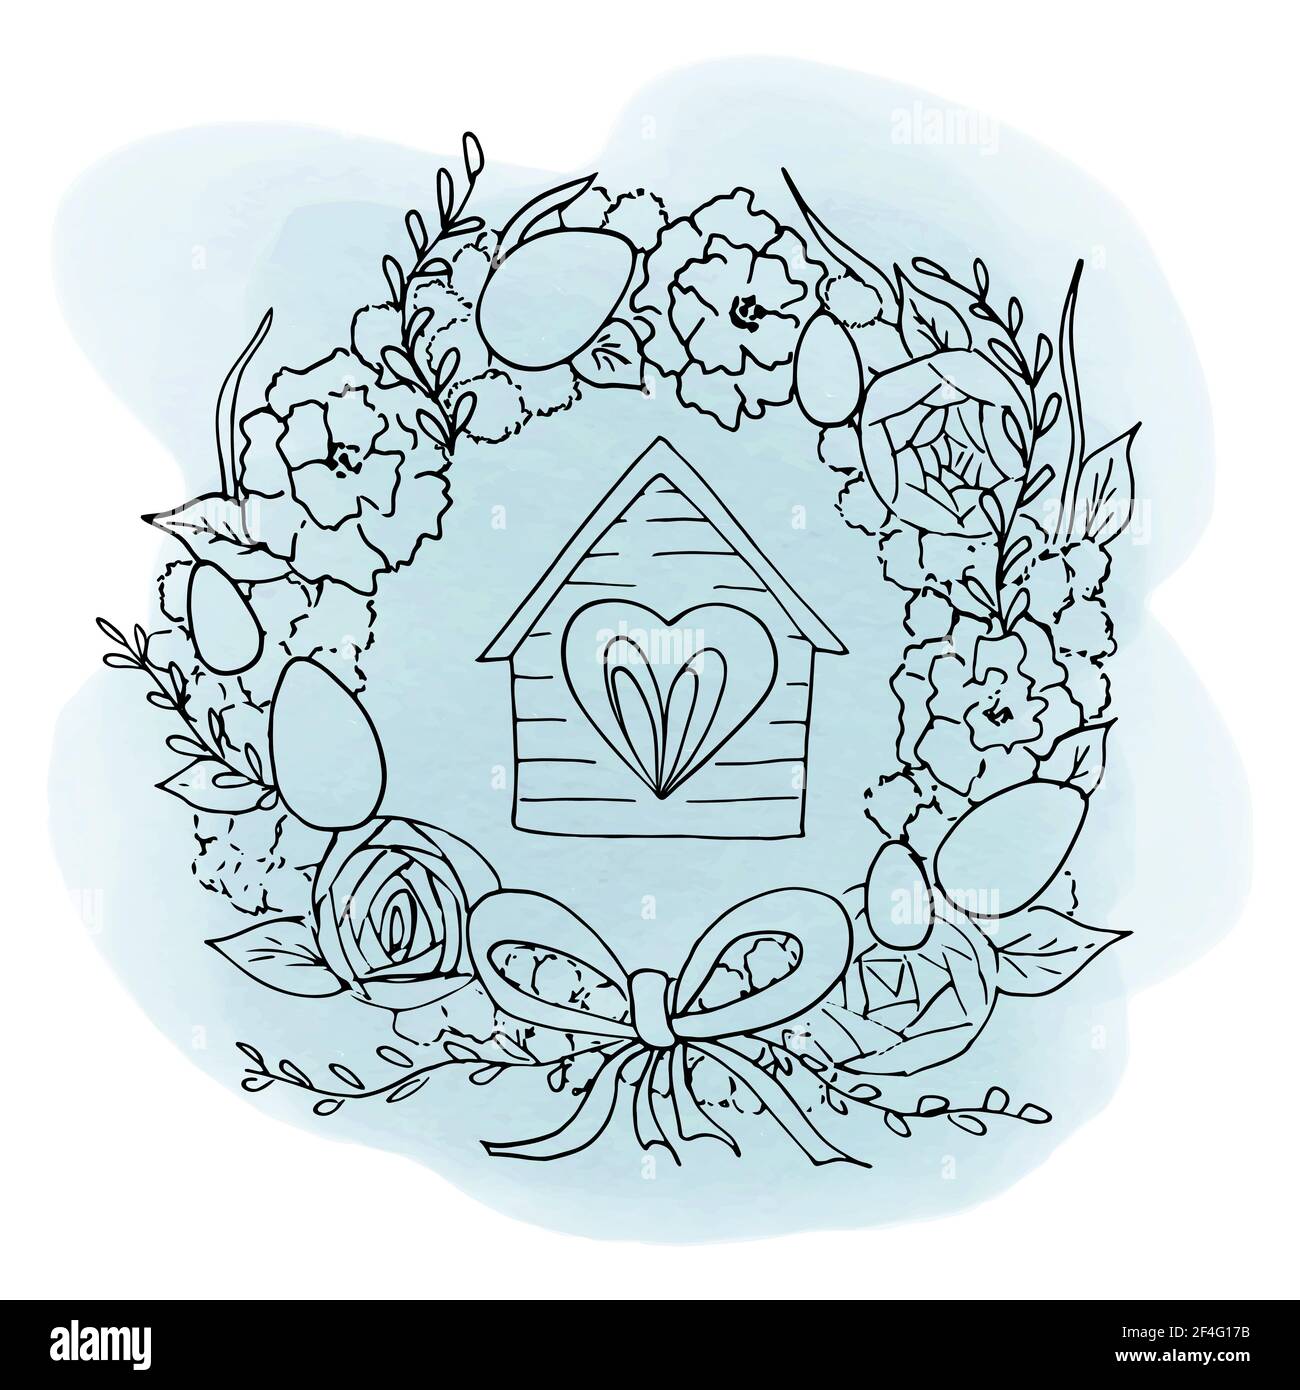 Scetch di Pasqua corona di fiori decorata con uova dipinte, nastro e casa con una finestra. Illustrazione vettoriale nello stile del disegno a mano lineare Illustrazione Vettoriale